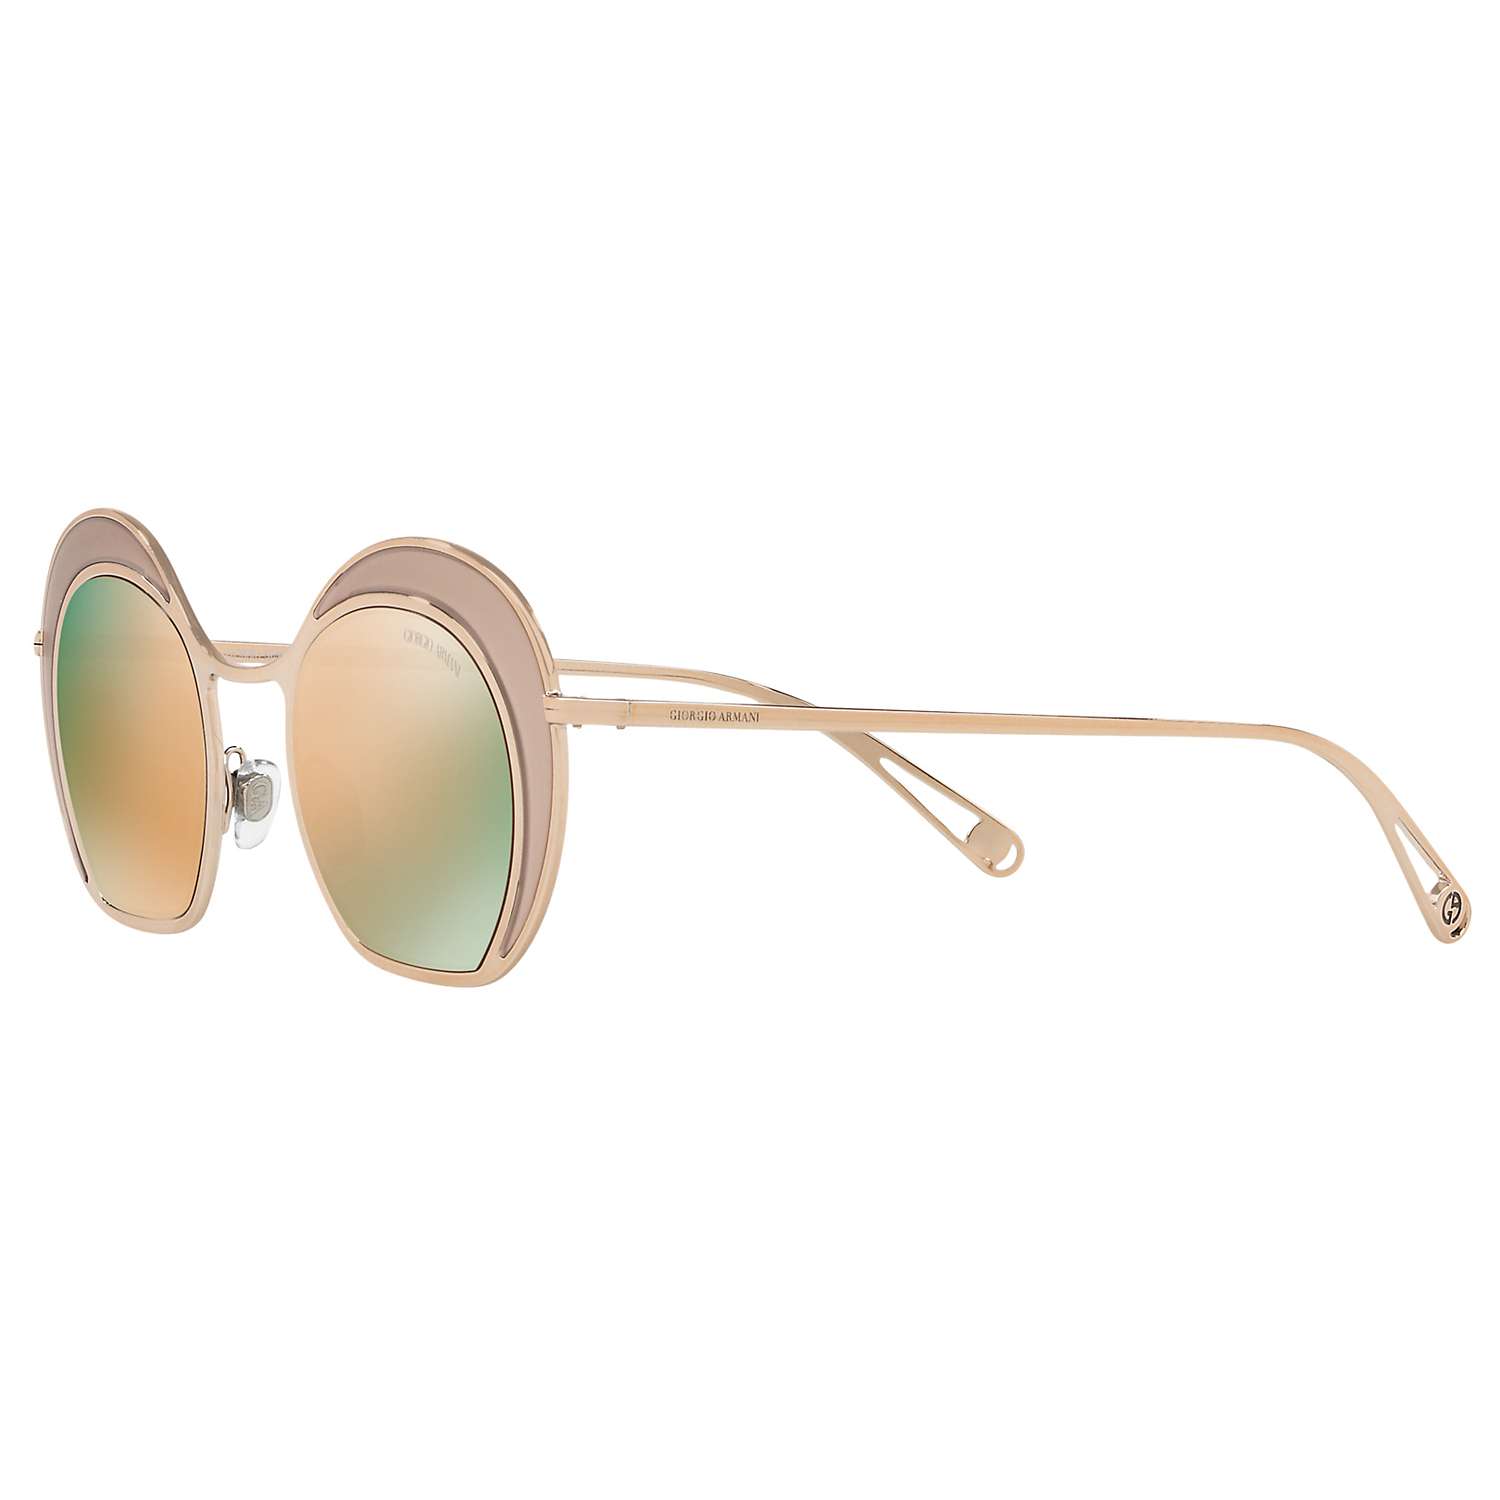 Womens Accessories Sunglasses Metallic - Save 13% Giorgio Armani Round Frame Sunglasses in Gold 